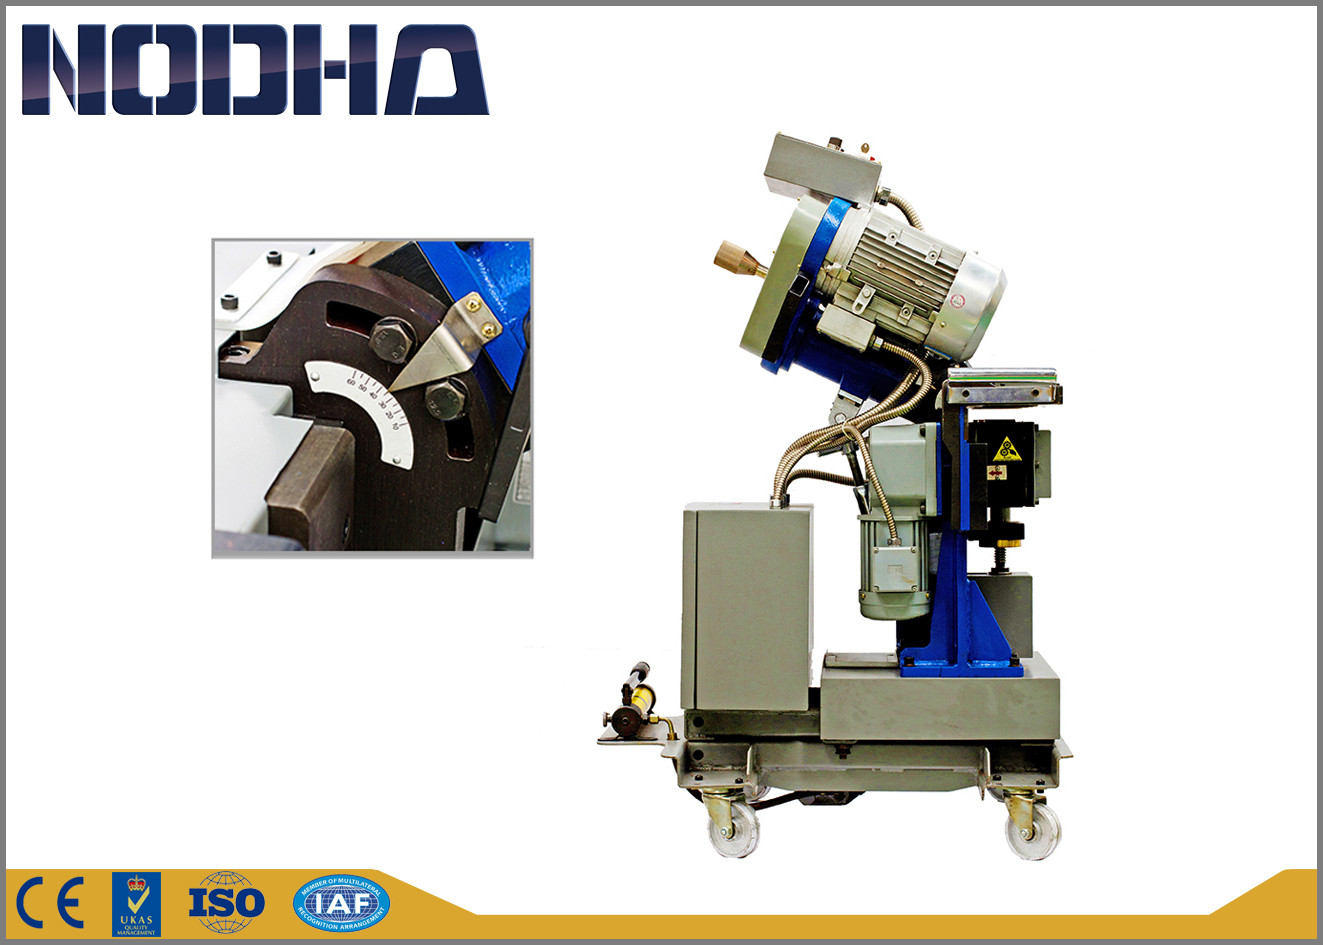 Opere facilmente a máquina do moinho de extremidade, máquina de corte chanfrada de baixo nível de ruído